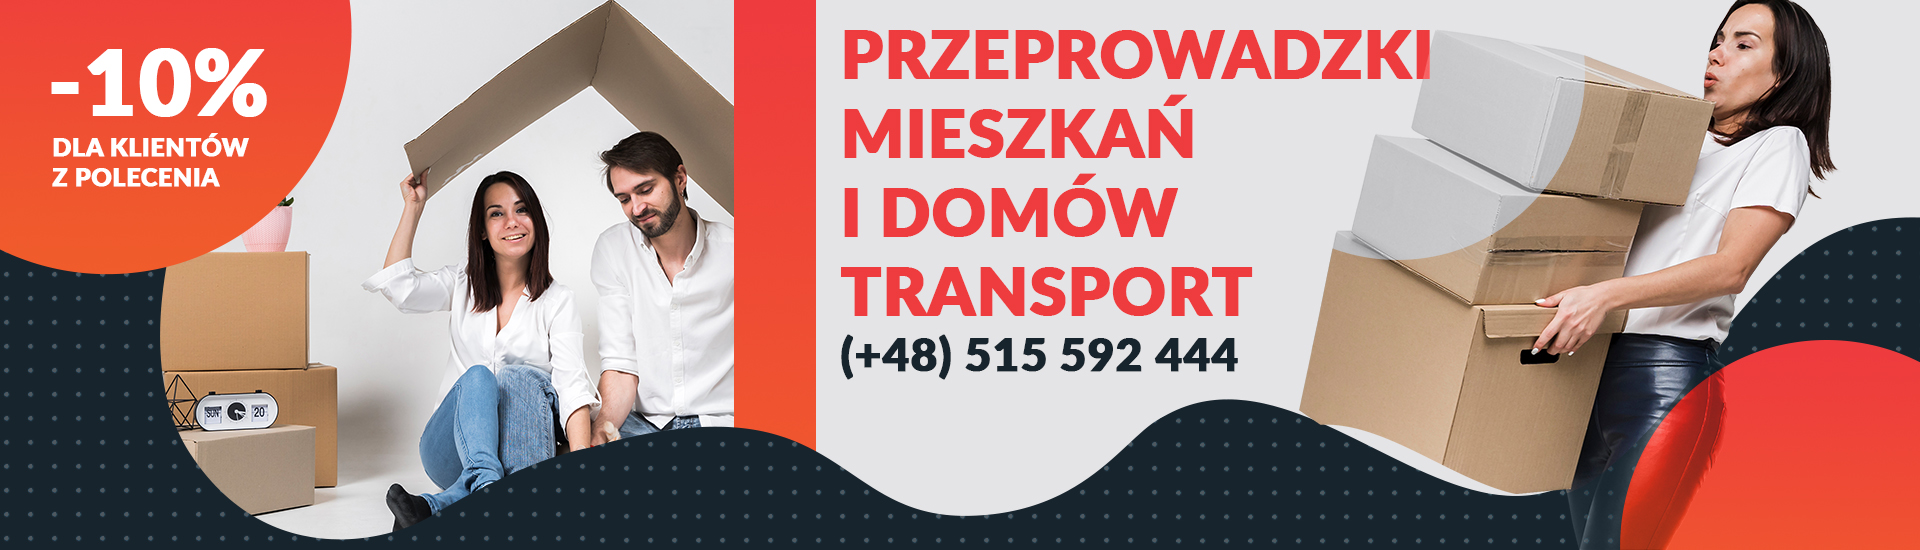 Przeprowadzki mieszkaÅ„ i domÃ³w Warszawa